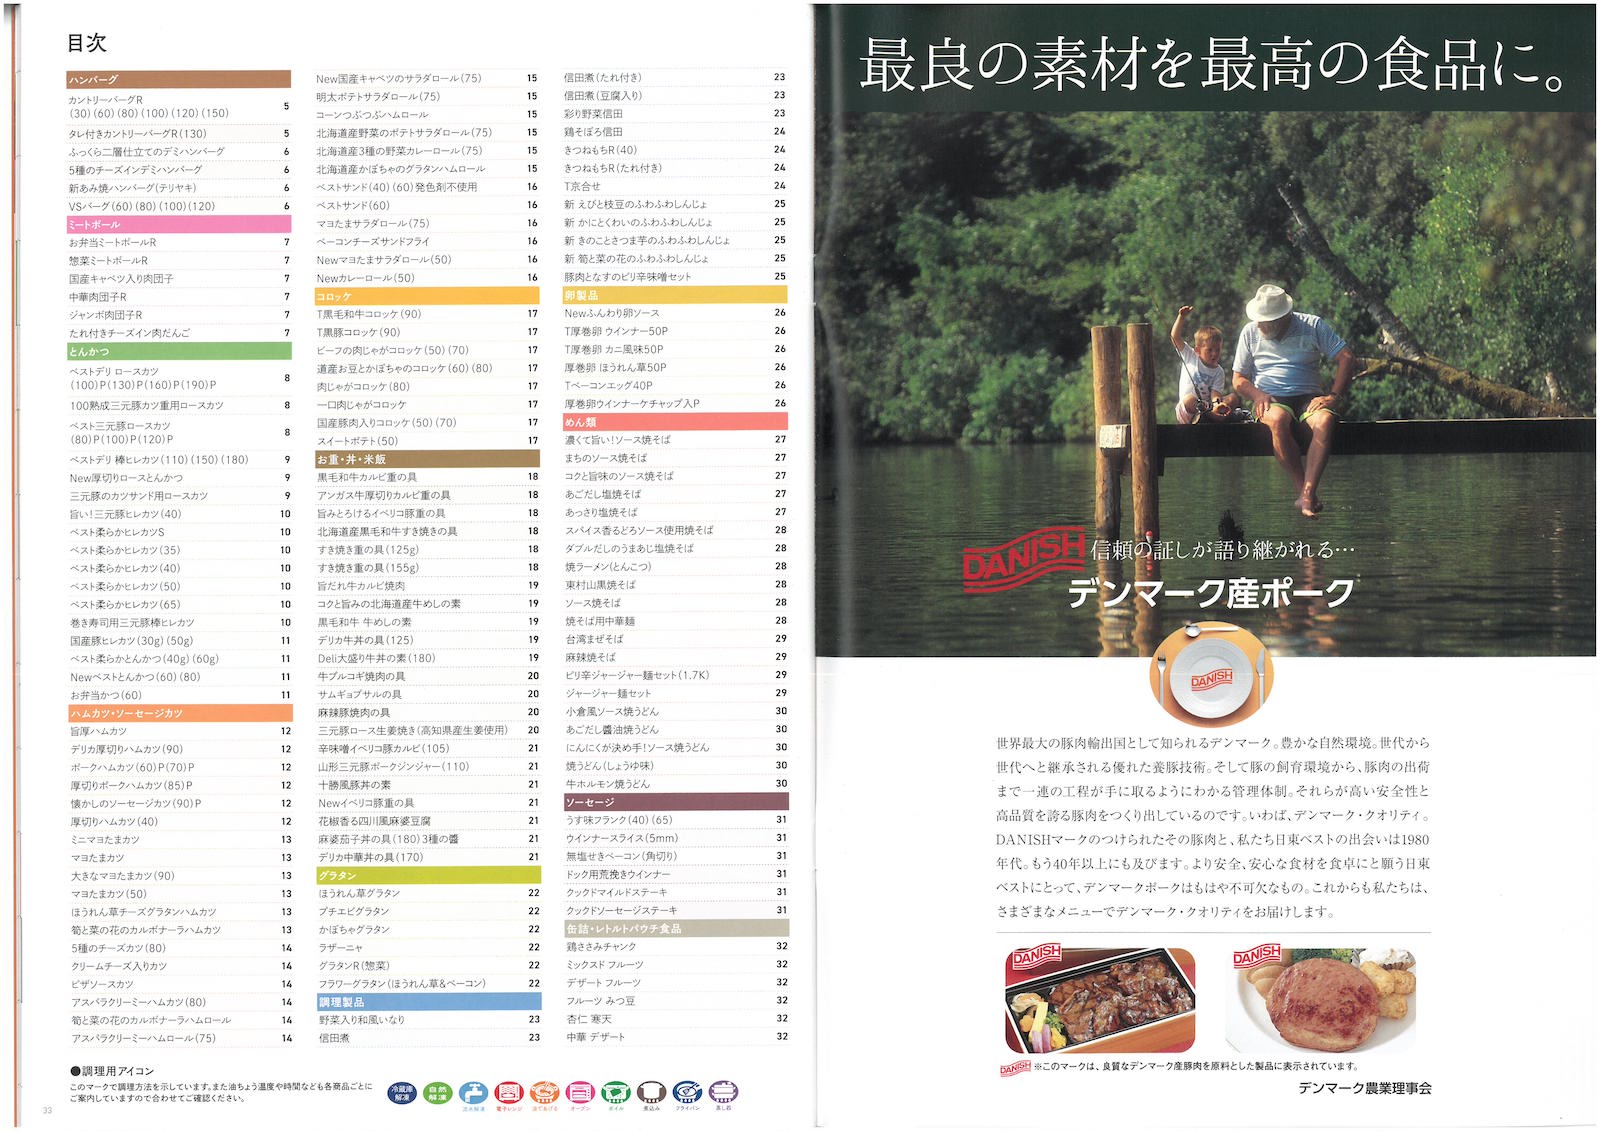 日東ベスト2022業務用食品総合カタログ Best Selection